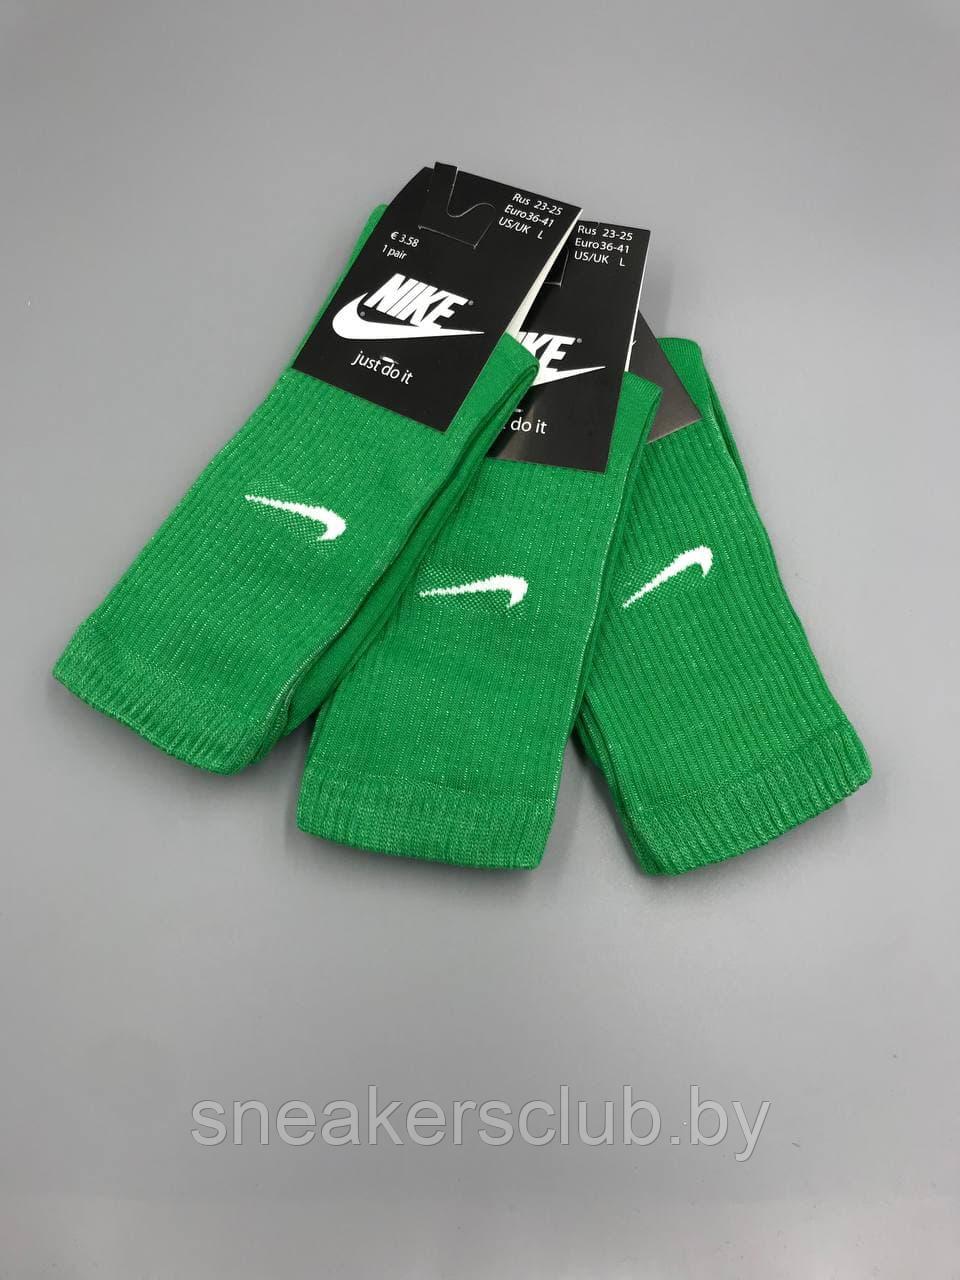 Зеленые носки Nike/ удлиненные носки/ носки с резинкой/ яркие носки